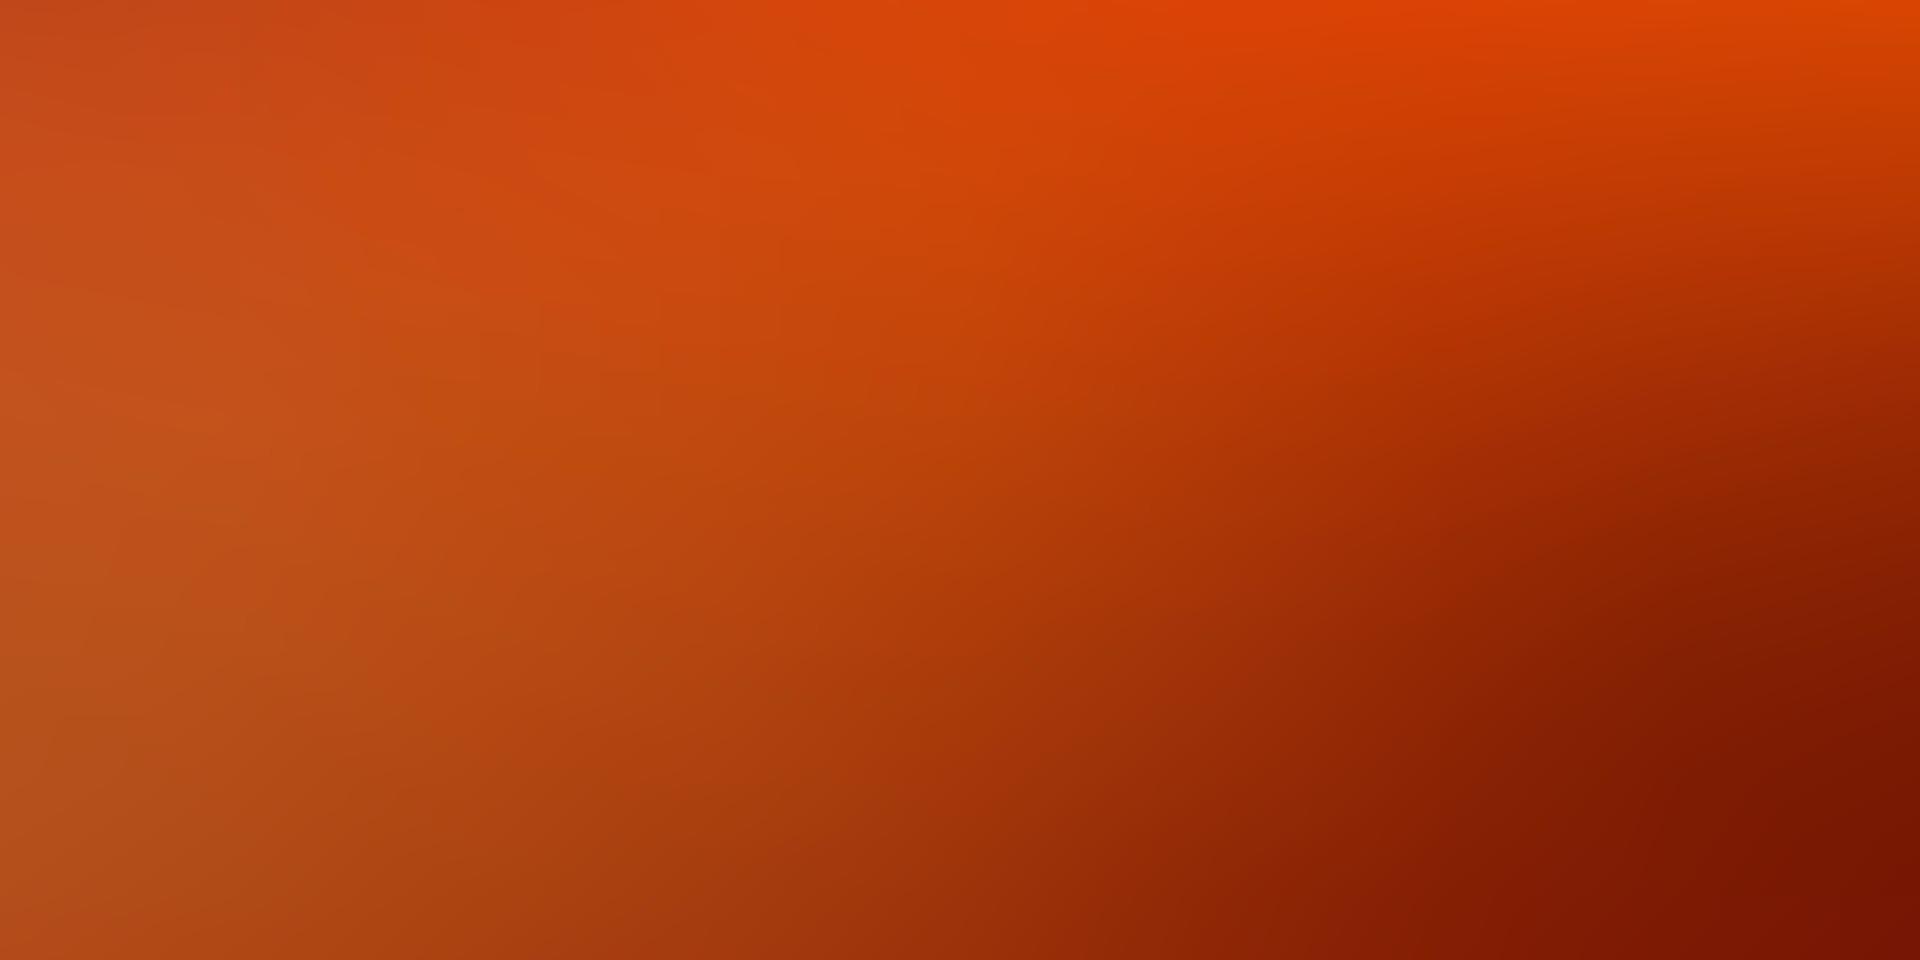 sfondo sfocato astratto vettoriale arancione chiaro.